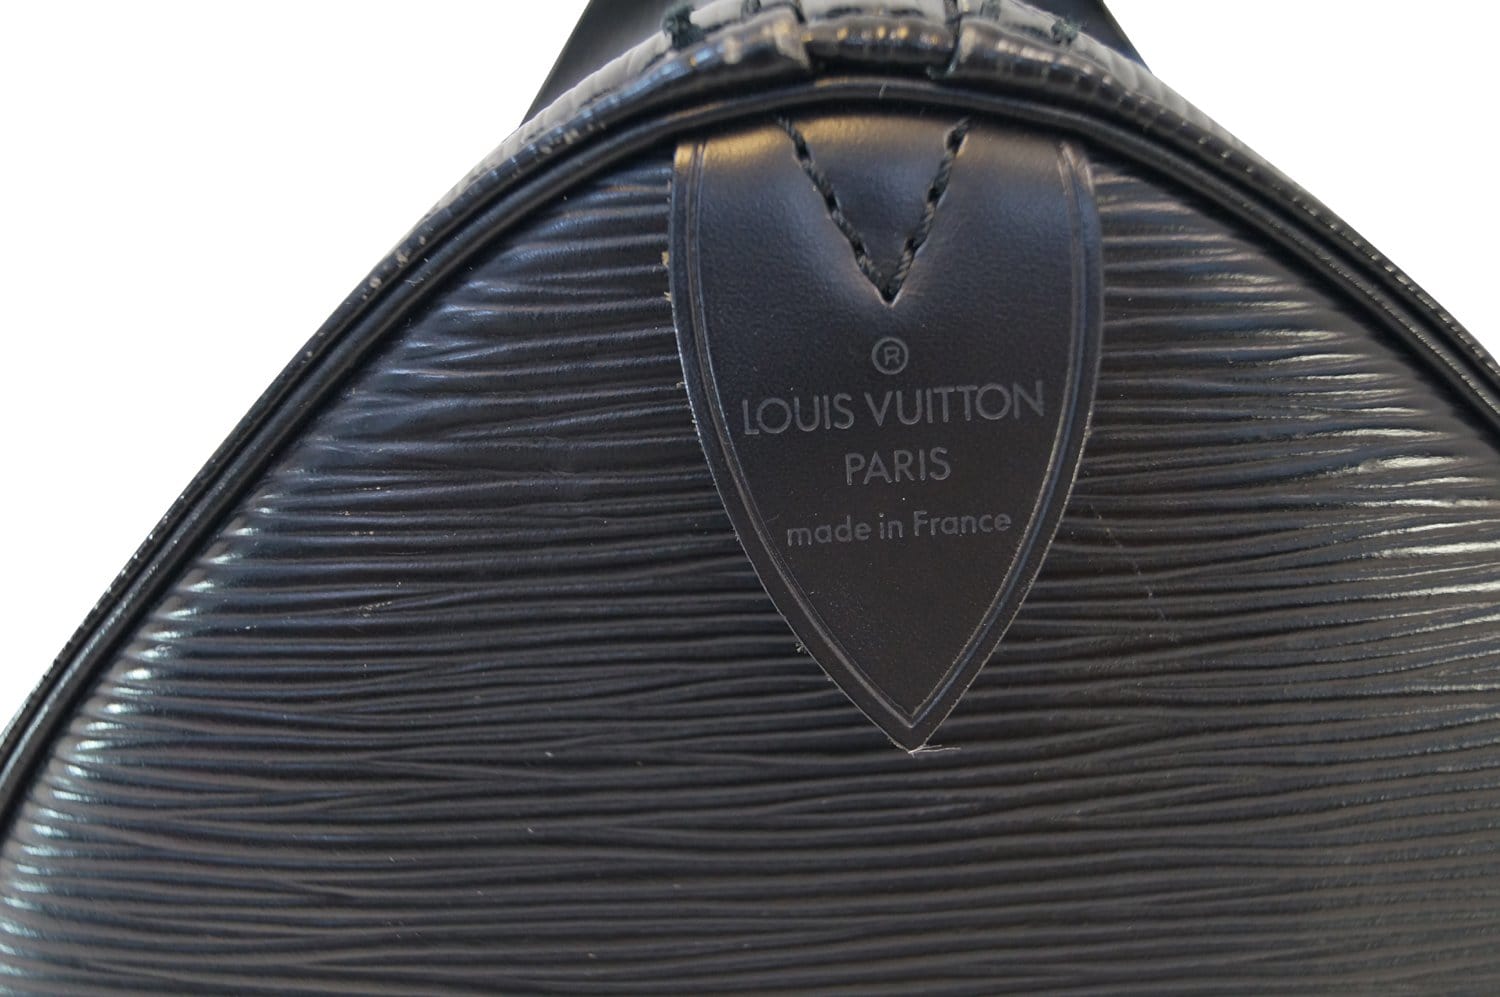 Louis Vuitton Black Epi Leather Noir Speedy 35 Boston Bag 863244